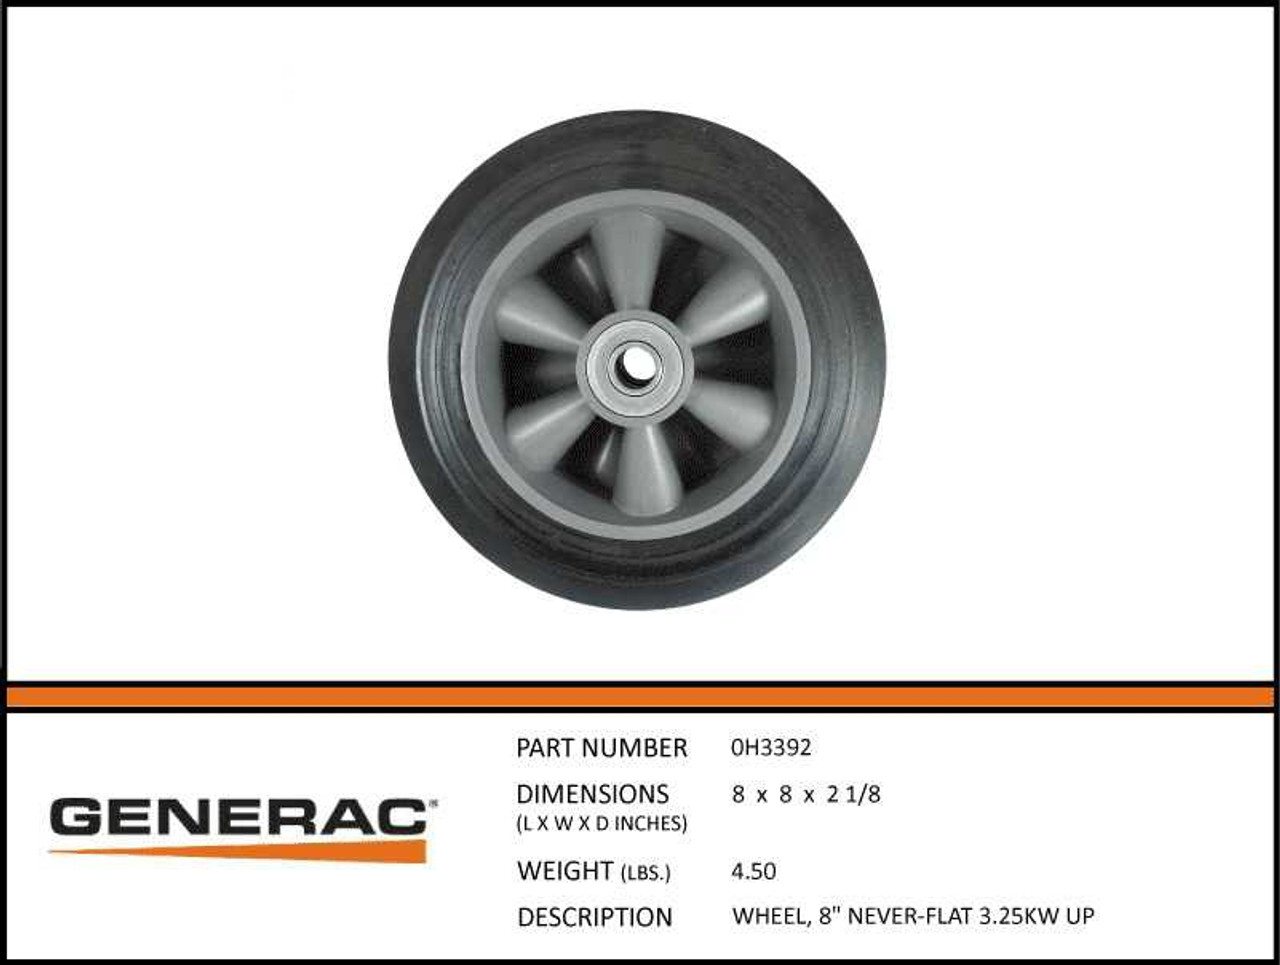 Generac 0H3392 8" Never-Flat Wheel